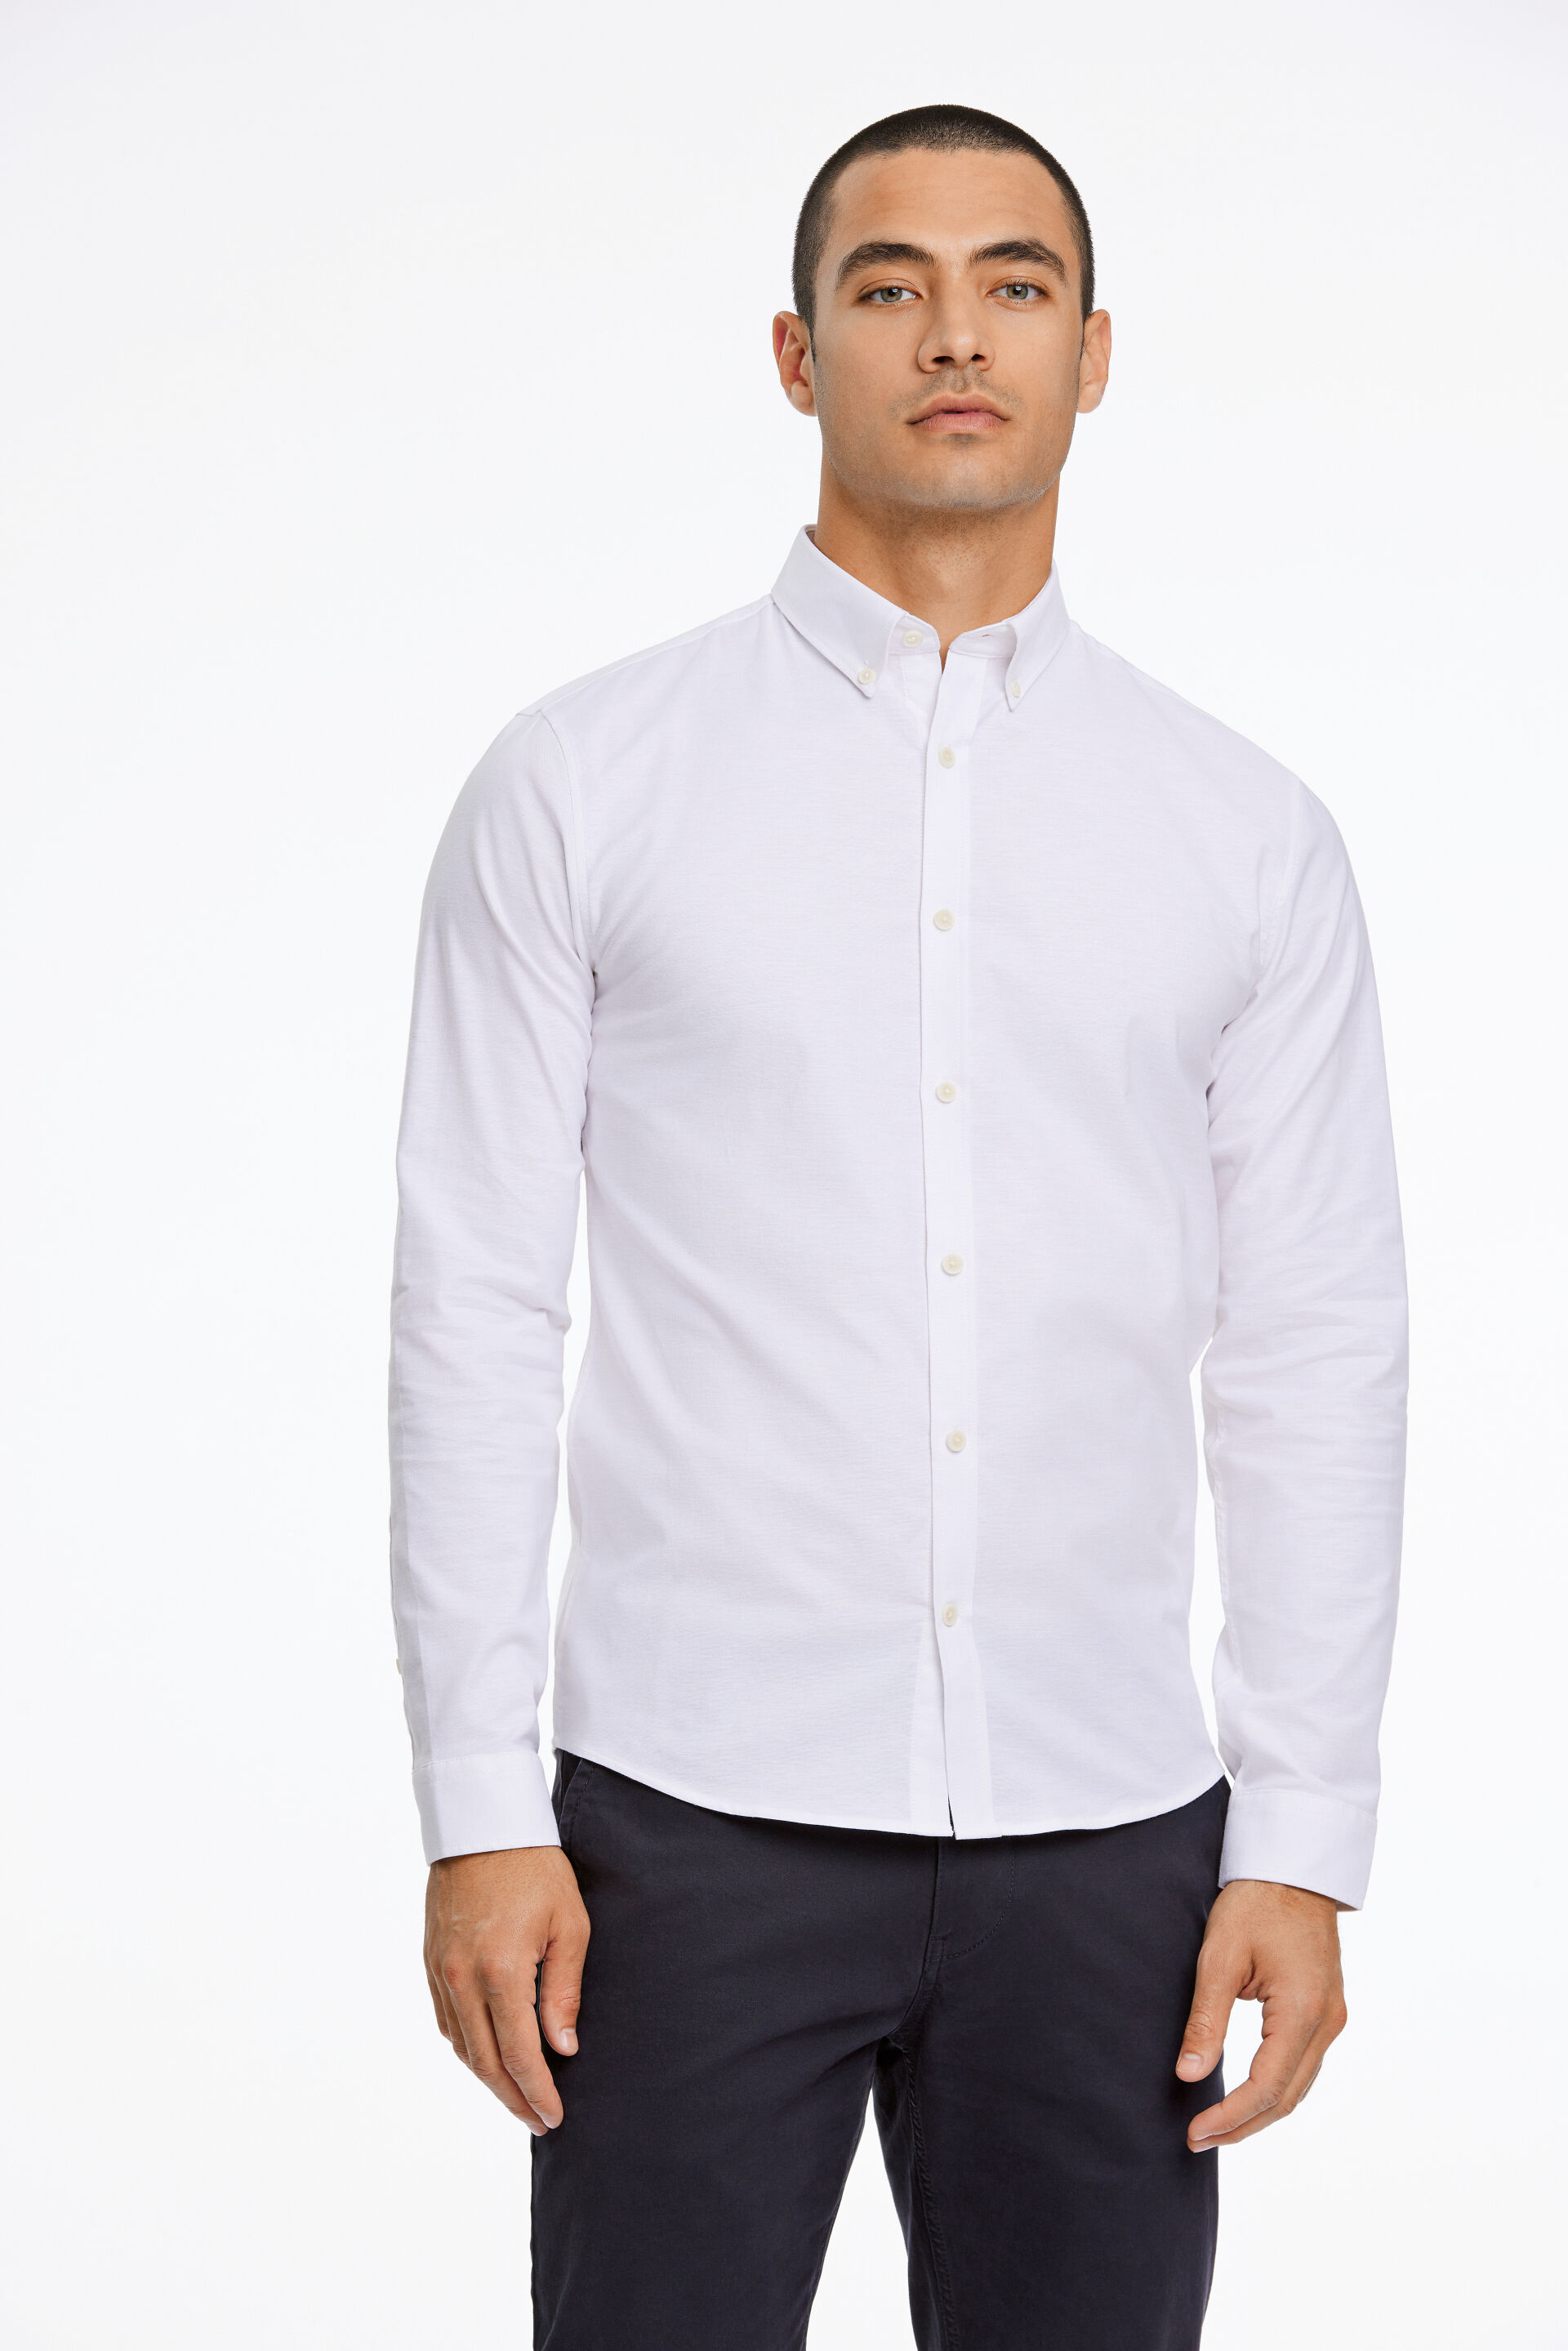 Model i hvid Lindbergh Oxfordskjorte og sorte habitbukser